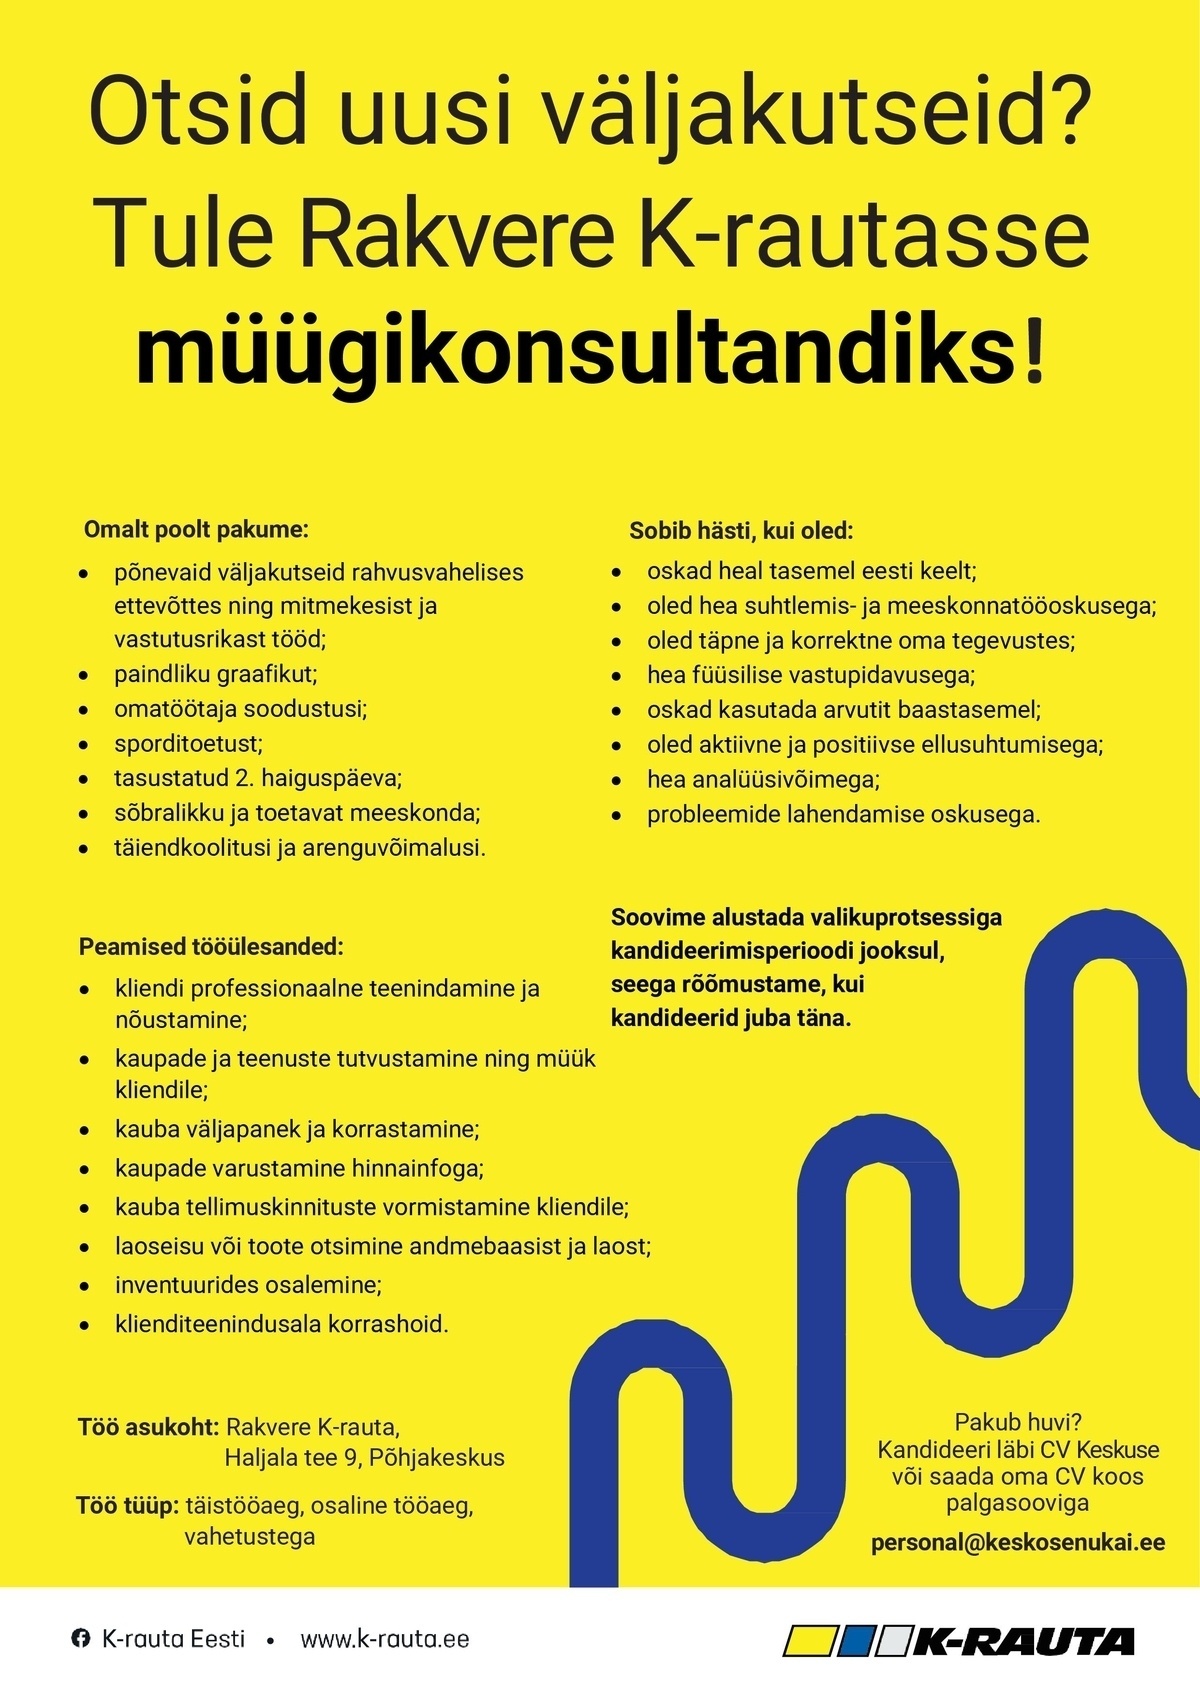 AS Kesko Senukai Estonia Müügikonsultant üldehitus Rakvere K-rautasse